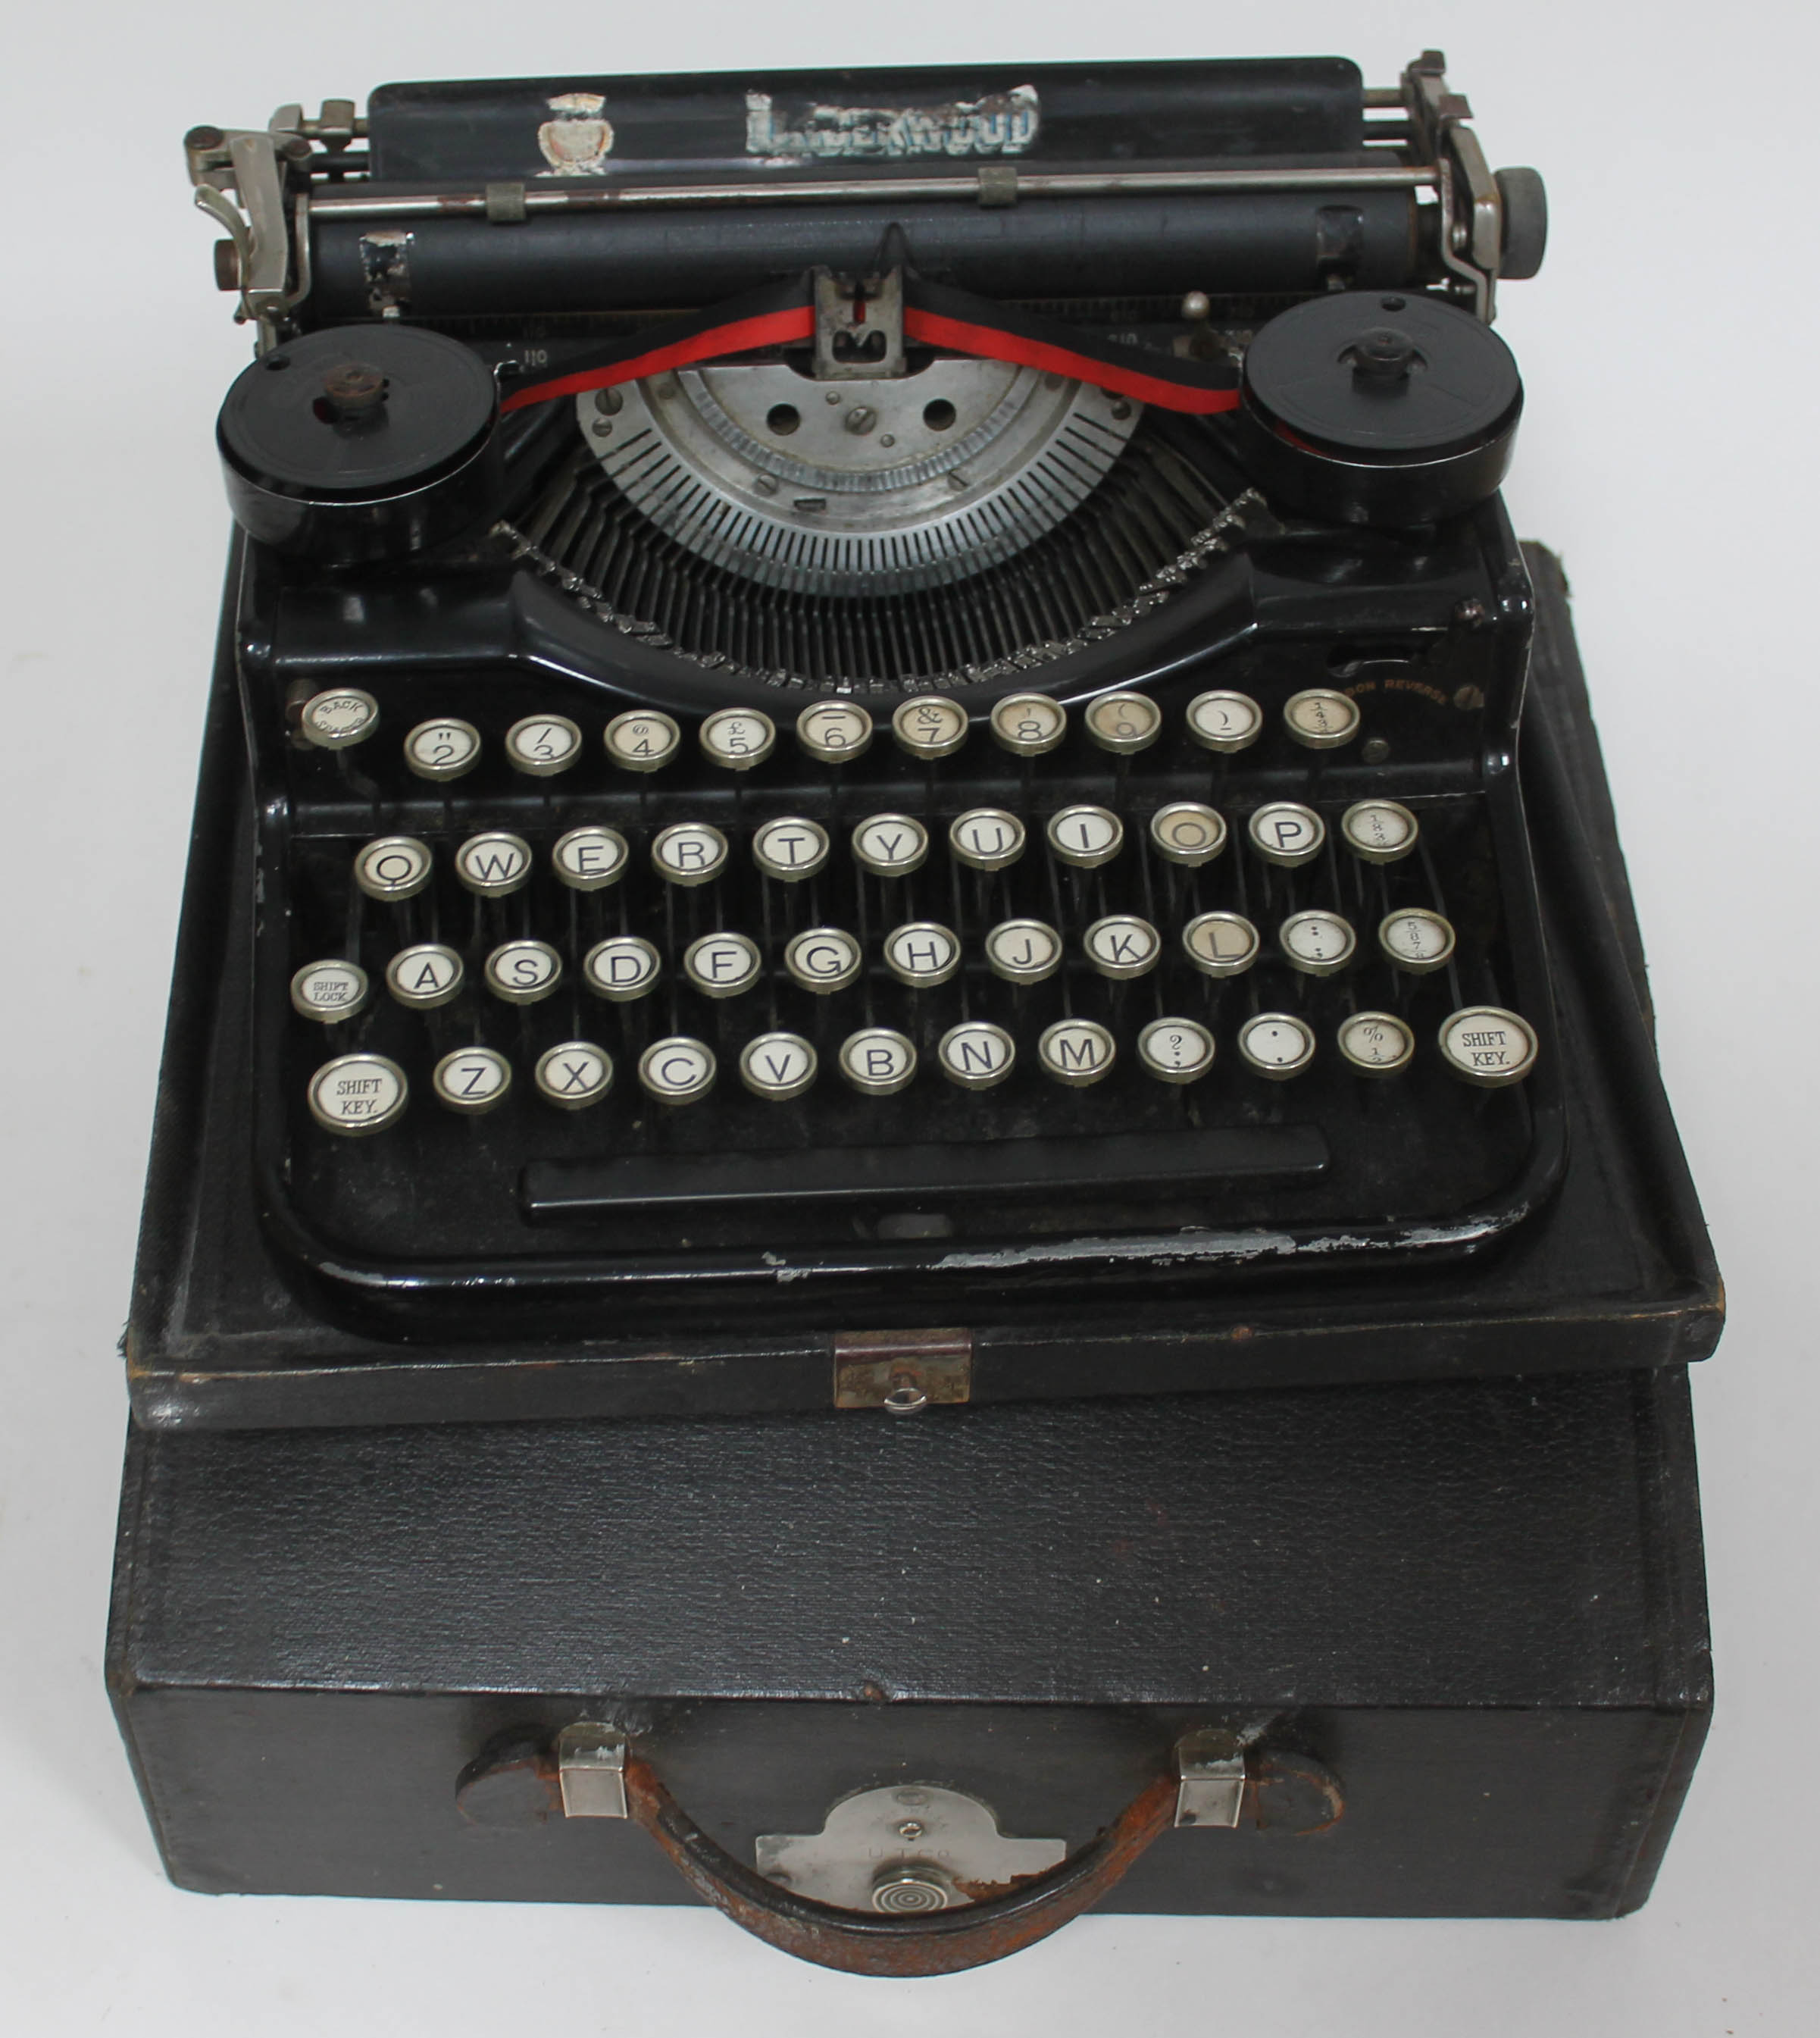 A pre-war Underwood portable typewriter.